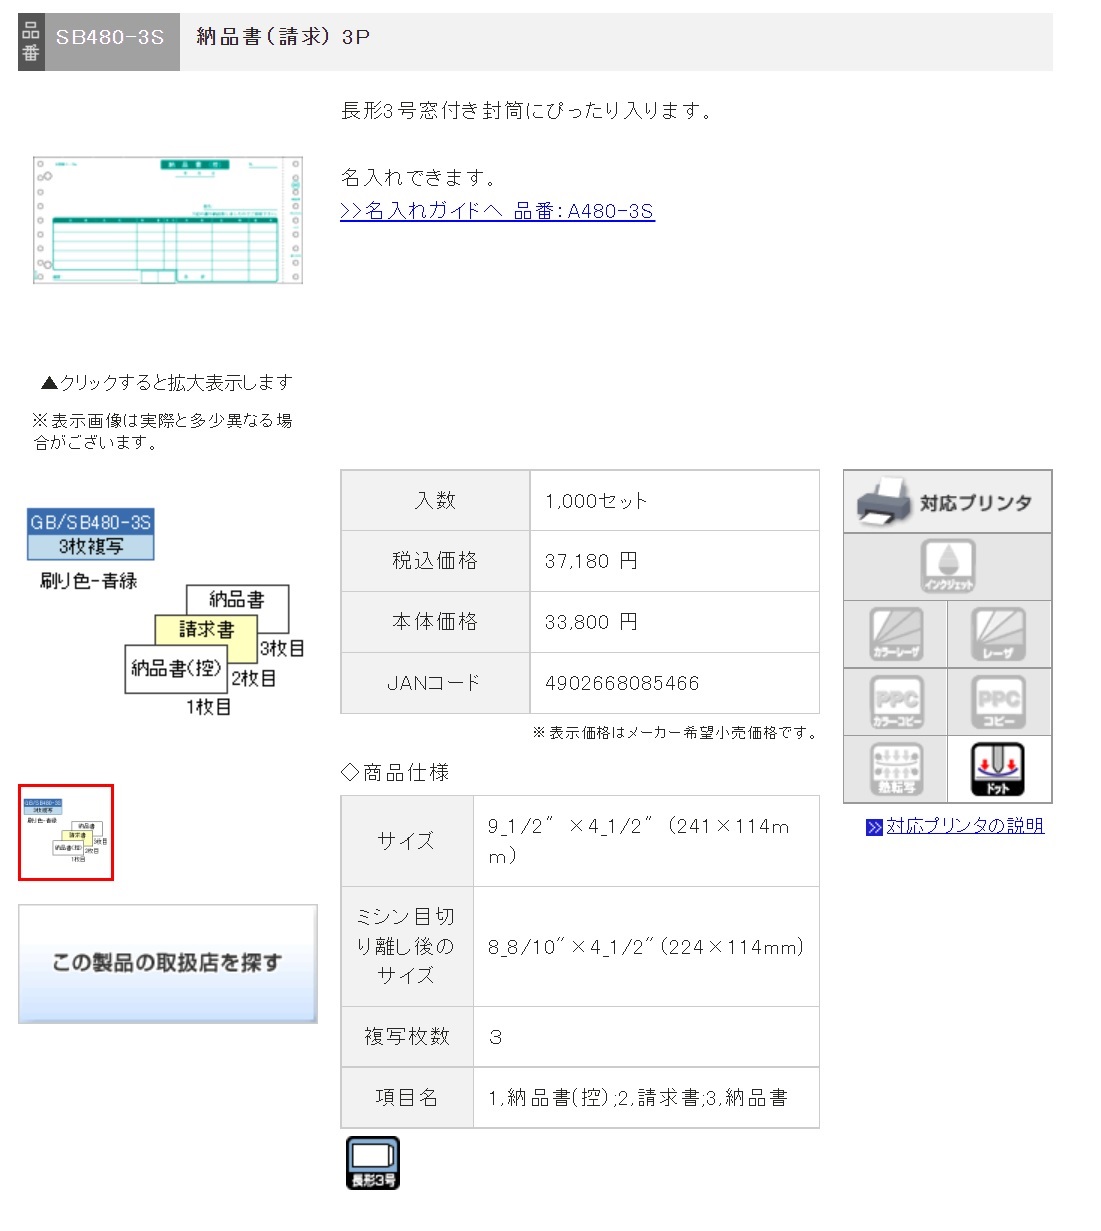 ヒサゴ コンピュータ用帳票 ドットプリンタ用 SB776C 1000セット - 1